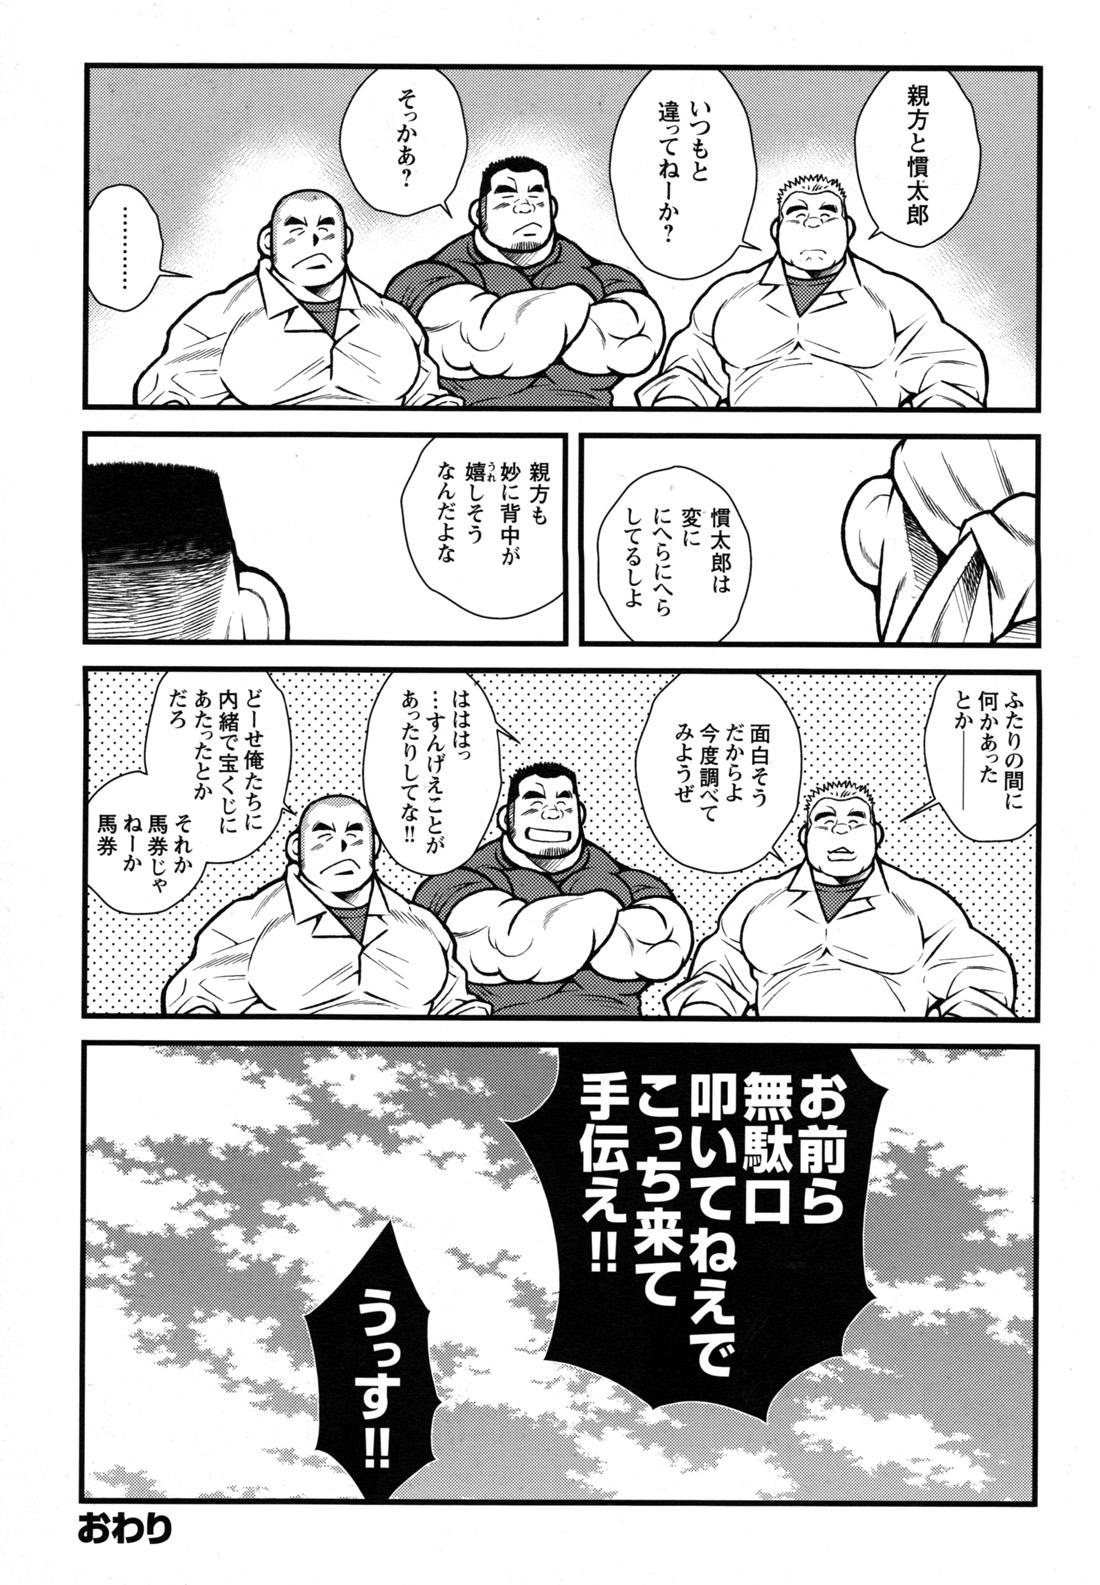 Comic G-men Gaho No.09 Gacchibi Zeme 71